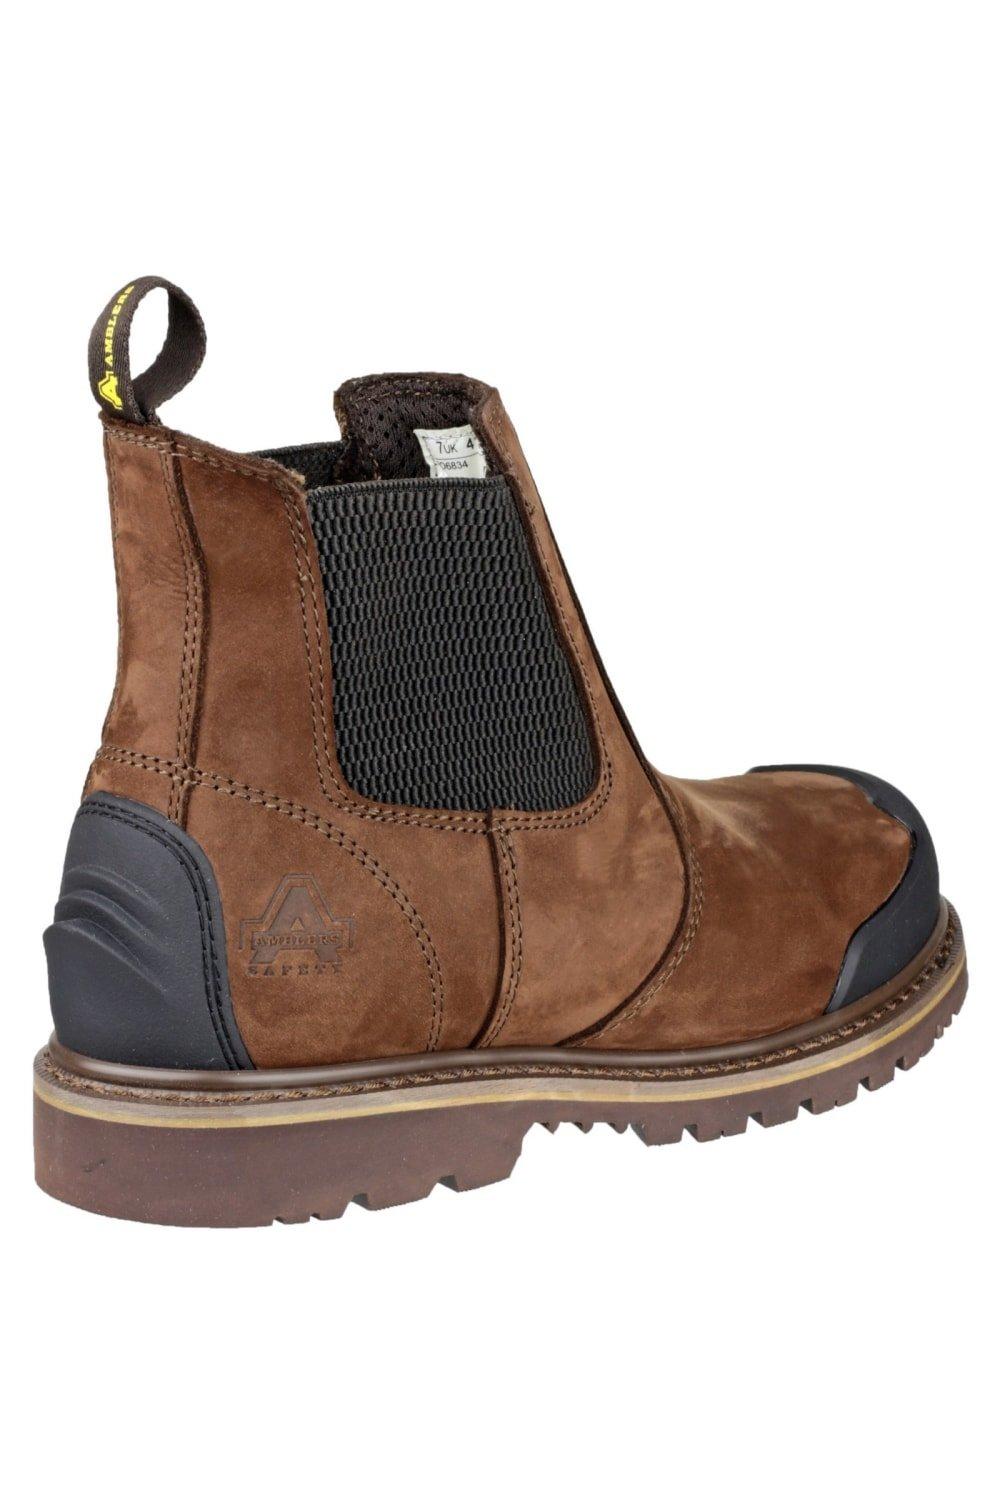 Защитные ботинки FS225 Amblers, коричневый фото